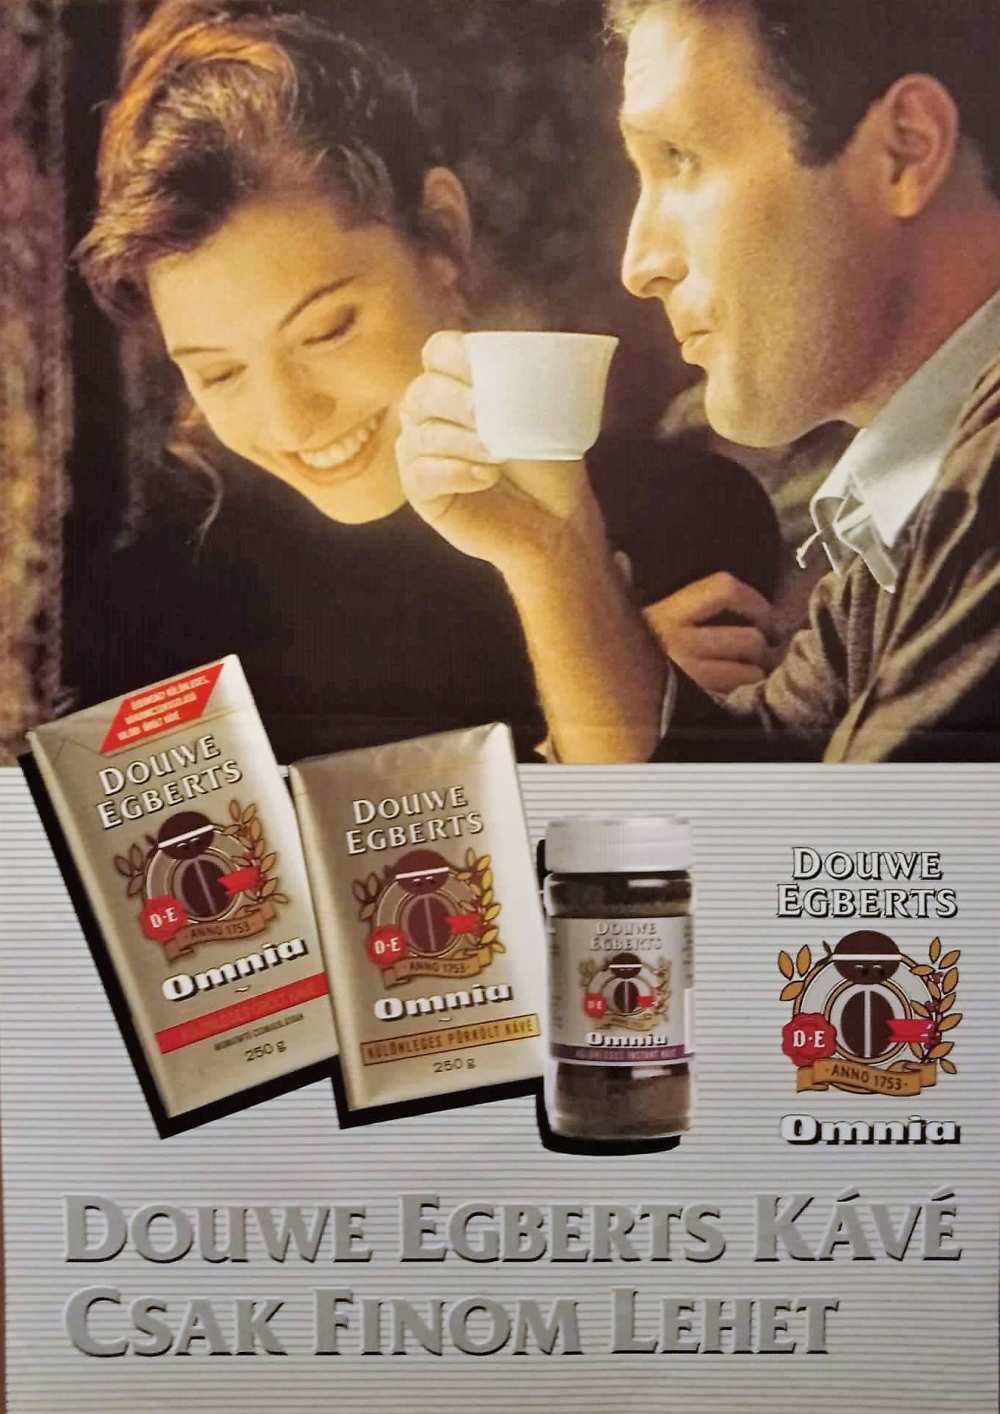 Douwe Egberts Omnia kávé csak finom lehet. Jelzet: PKG.1992/395. – Térkép-, Plakát- és Kisnyomtatványtár